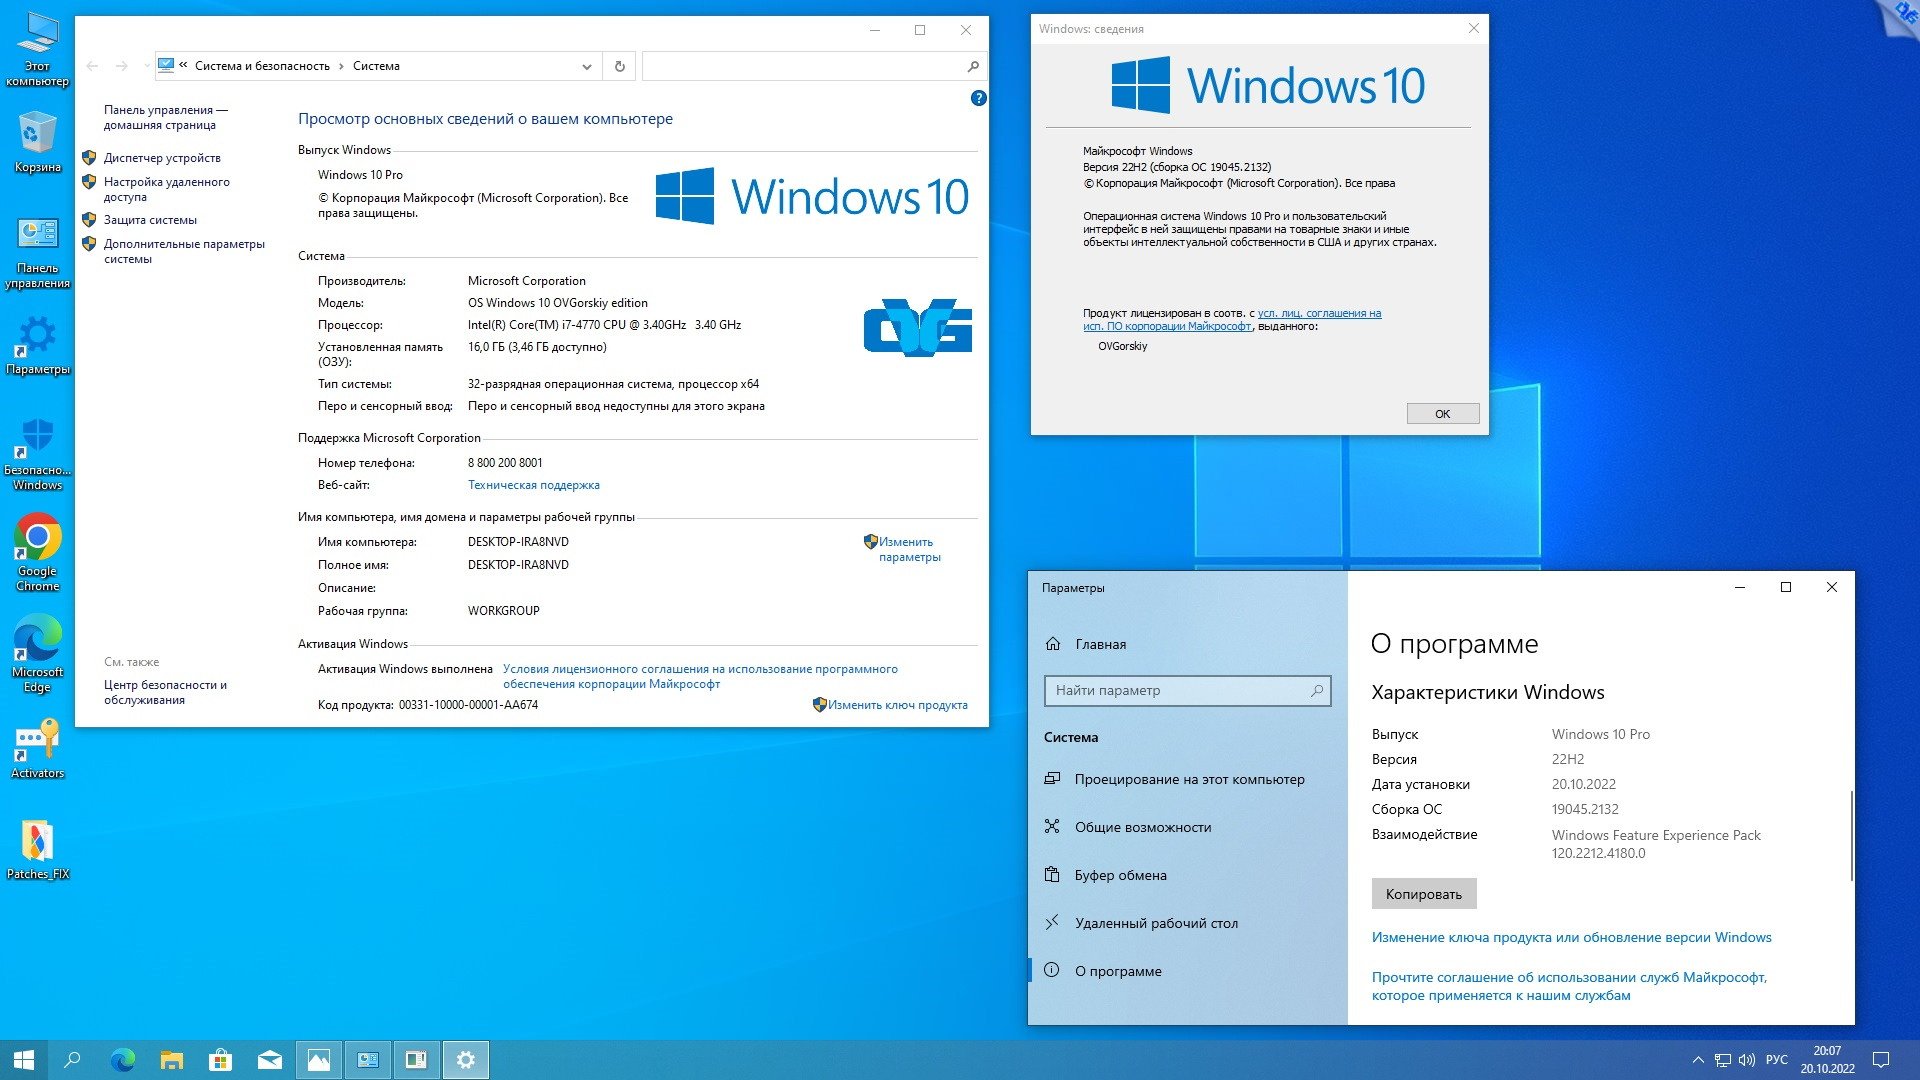 Windows 10 64 home 22h2. Windows 10, версия 22h2. Windows 10 Pro компьютер. Windows 10 Pro 22h2. Окно виндовс 10.